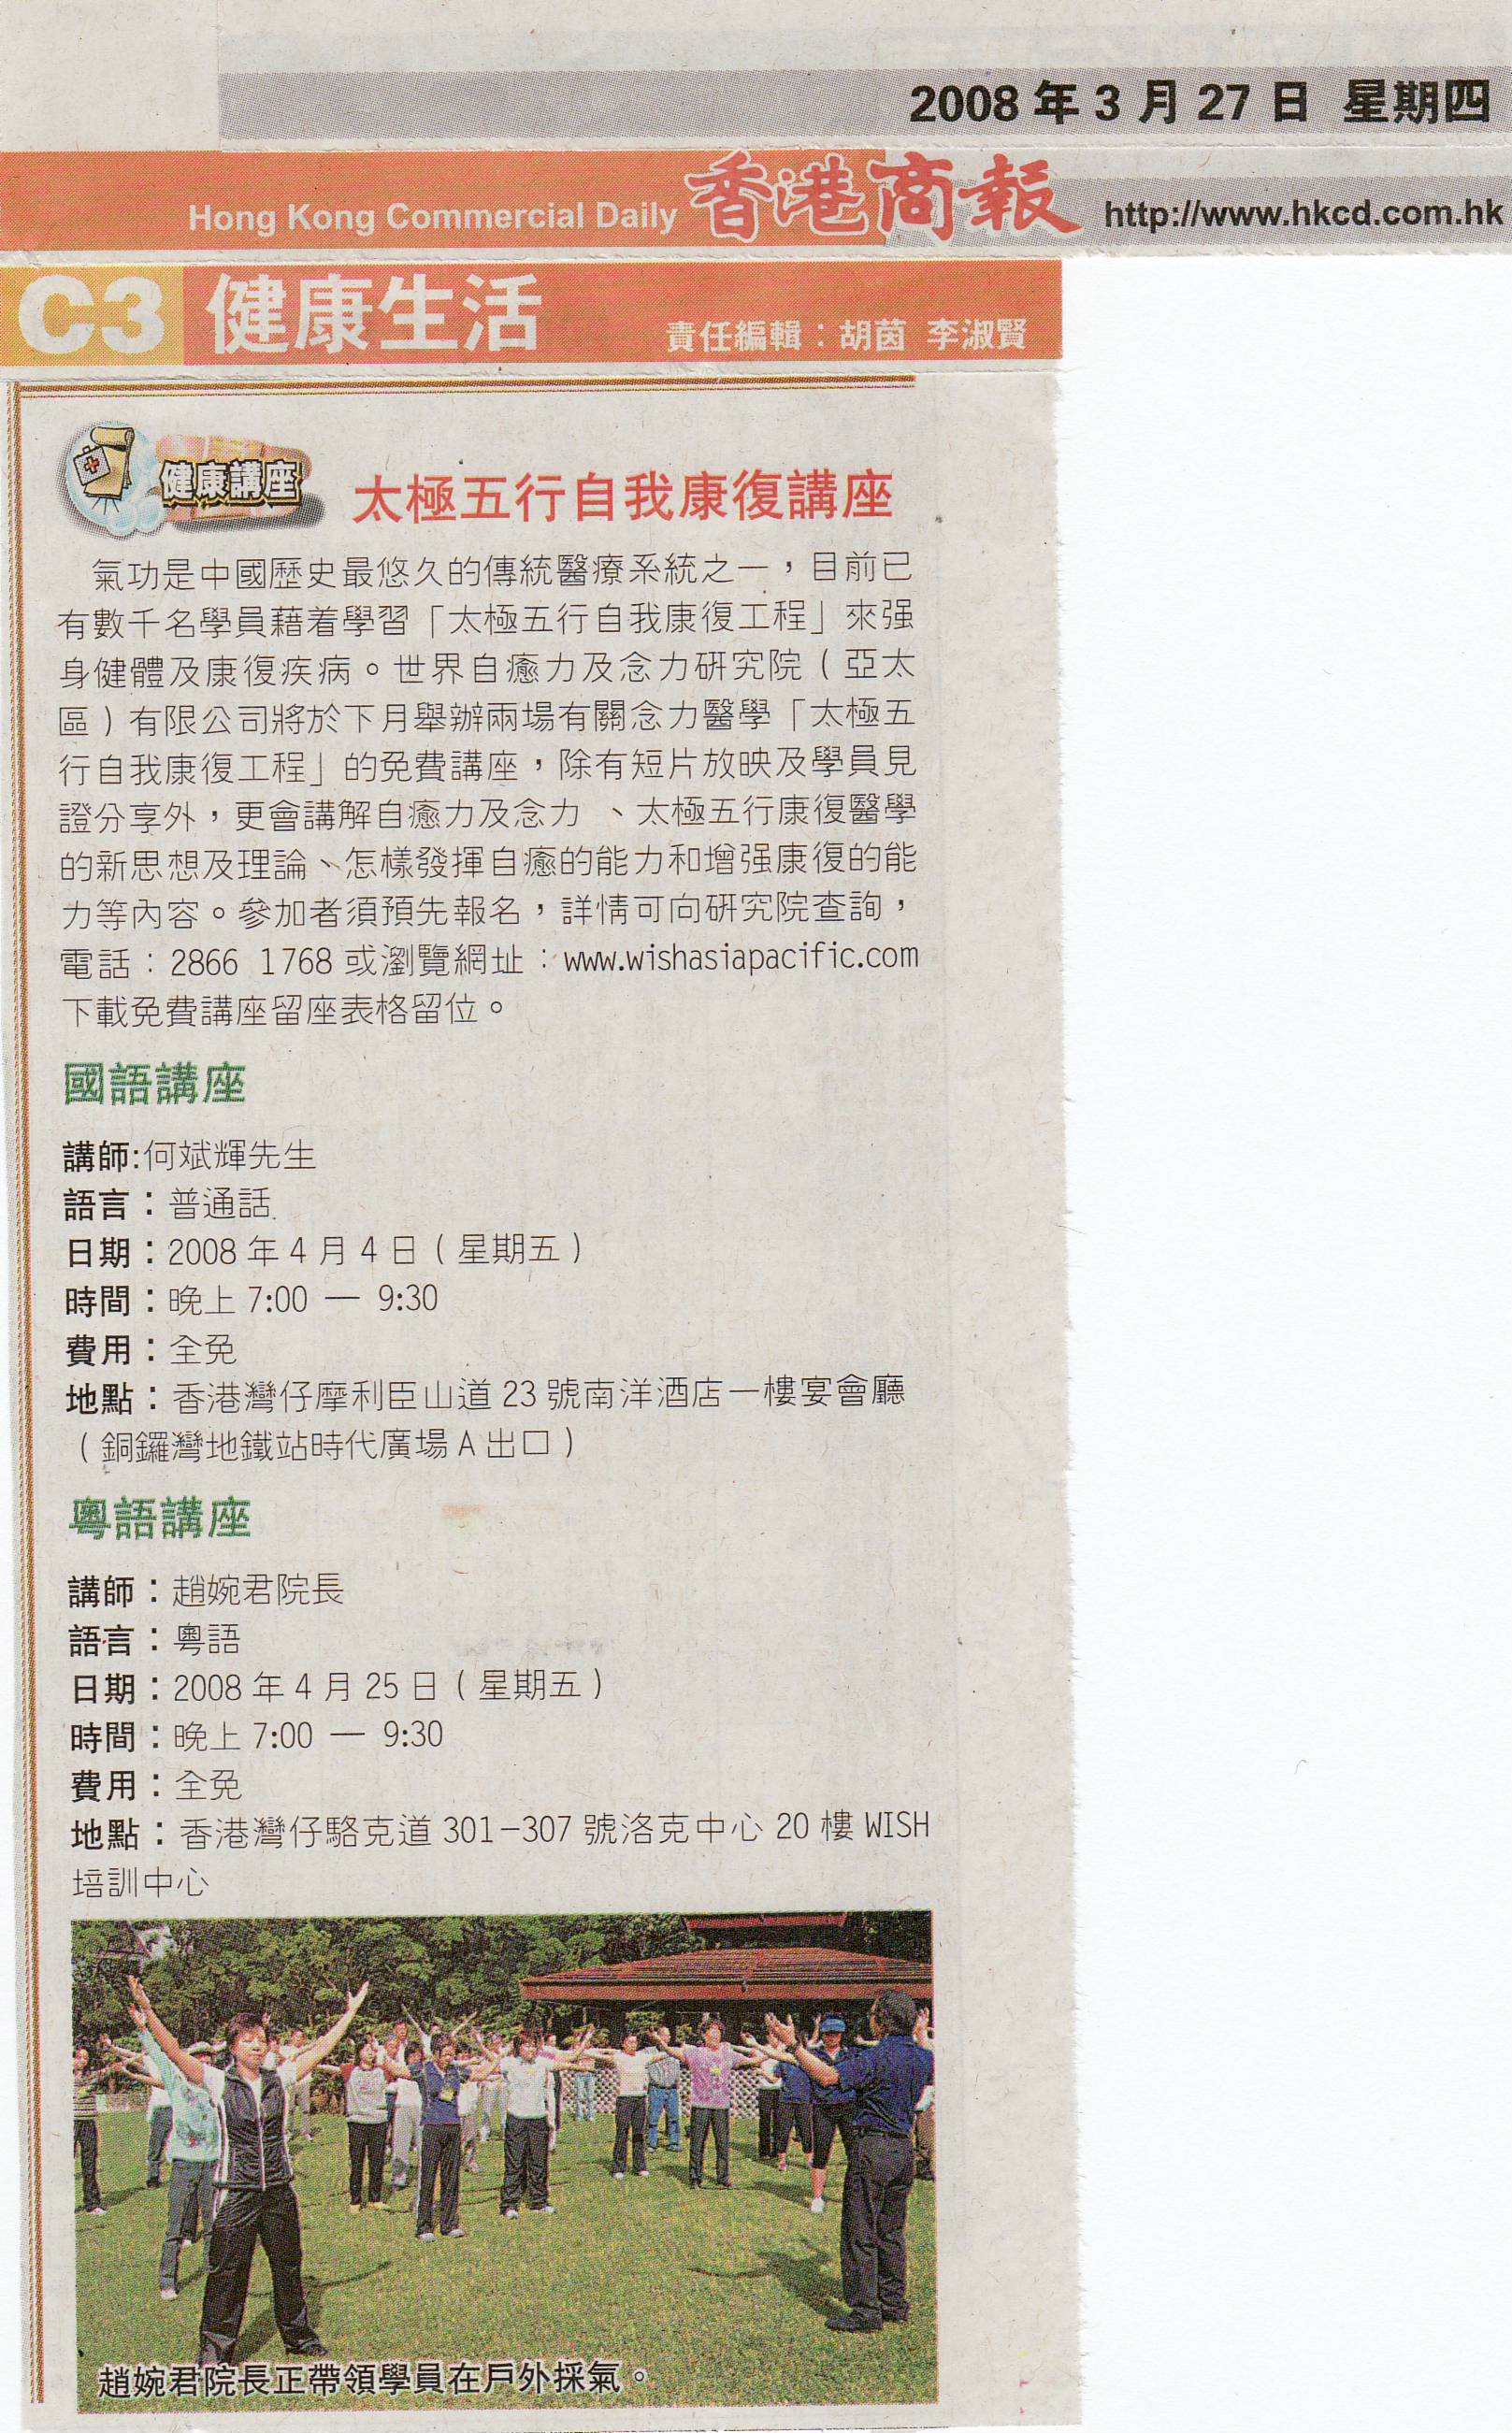 香港商報: 2008年3月27日 (太極五行自我康復講座)